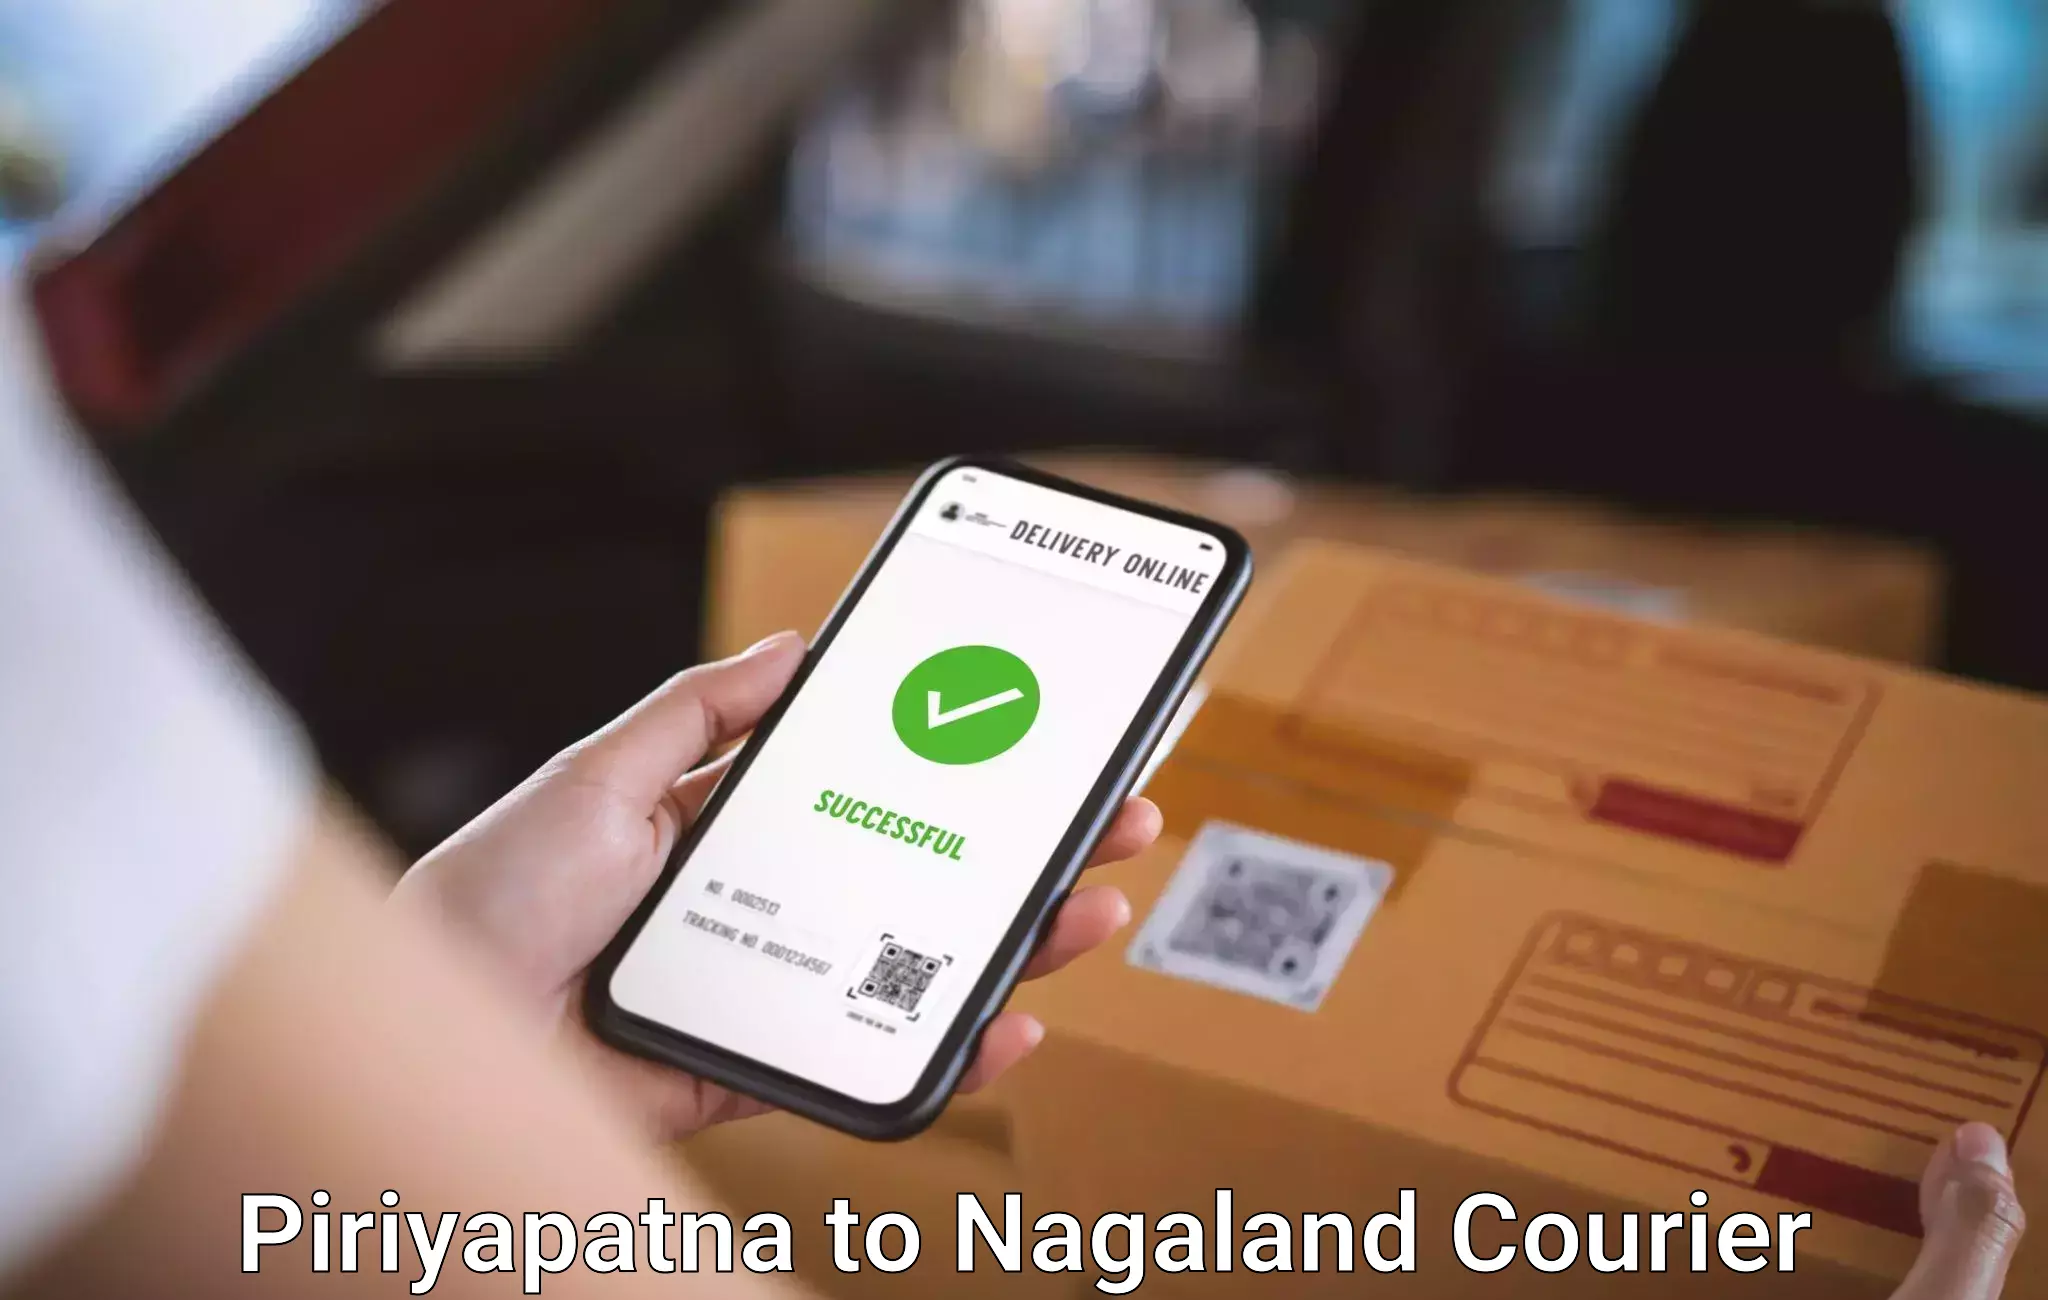 Baggage shipping experience Piriyapatna to Nagaland